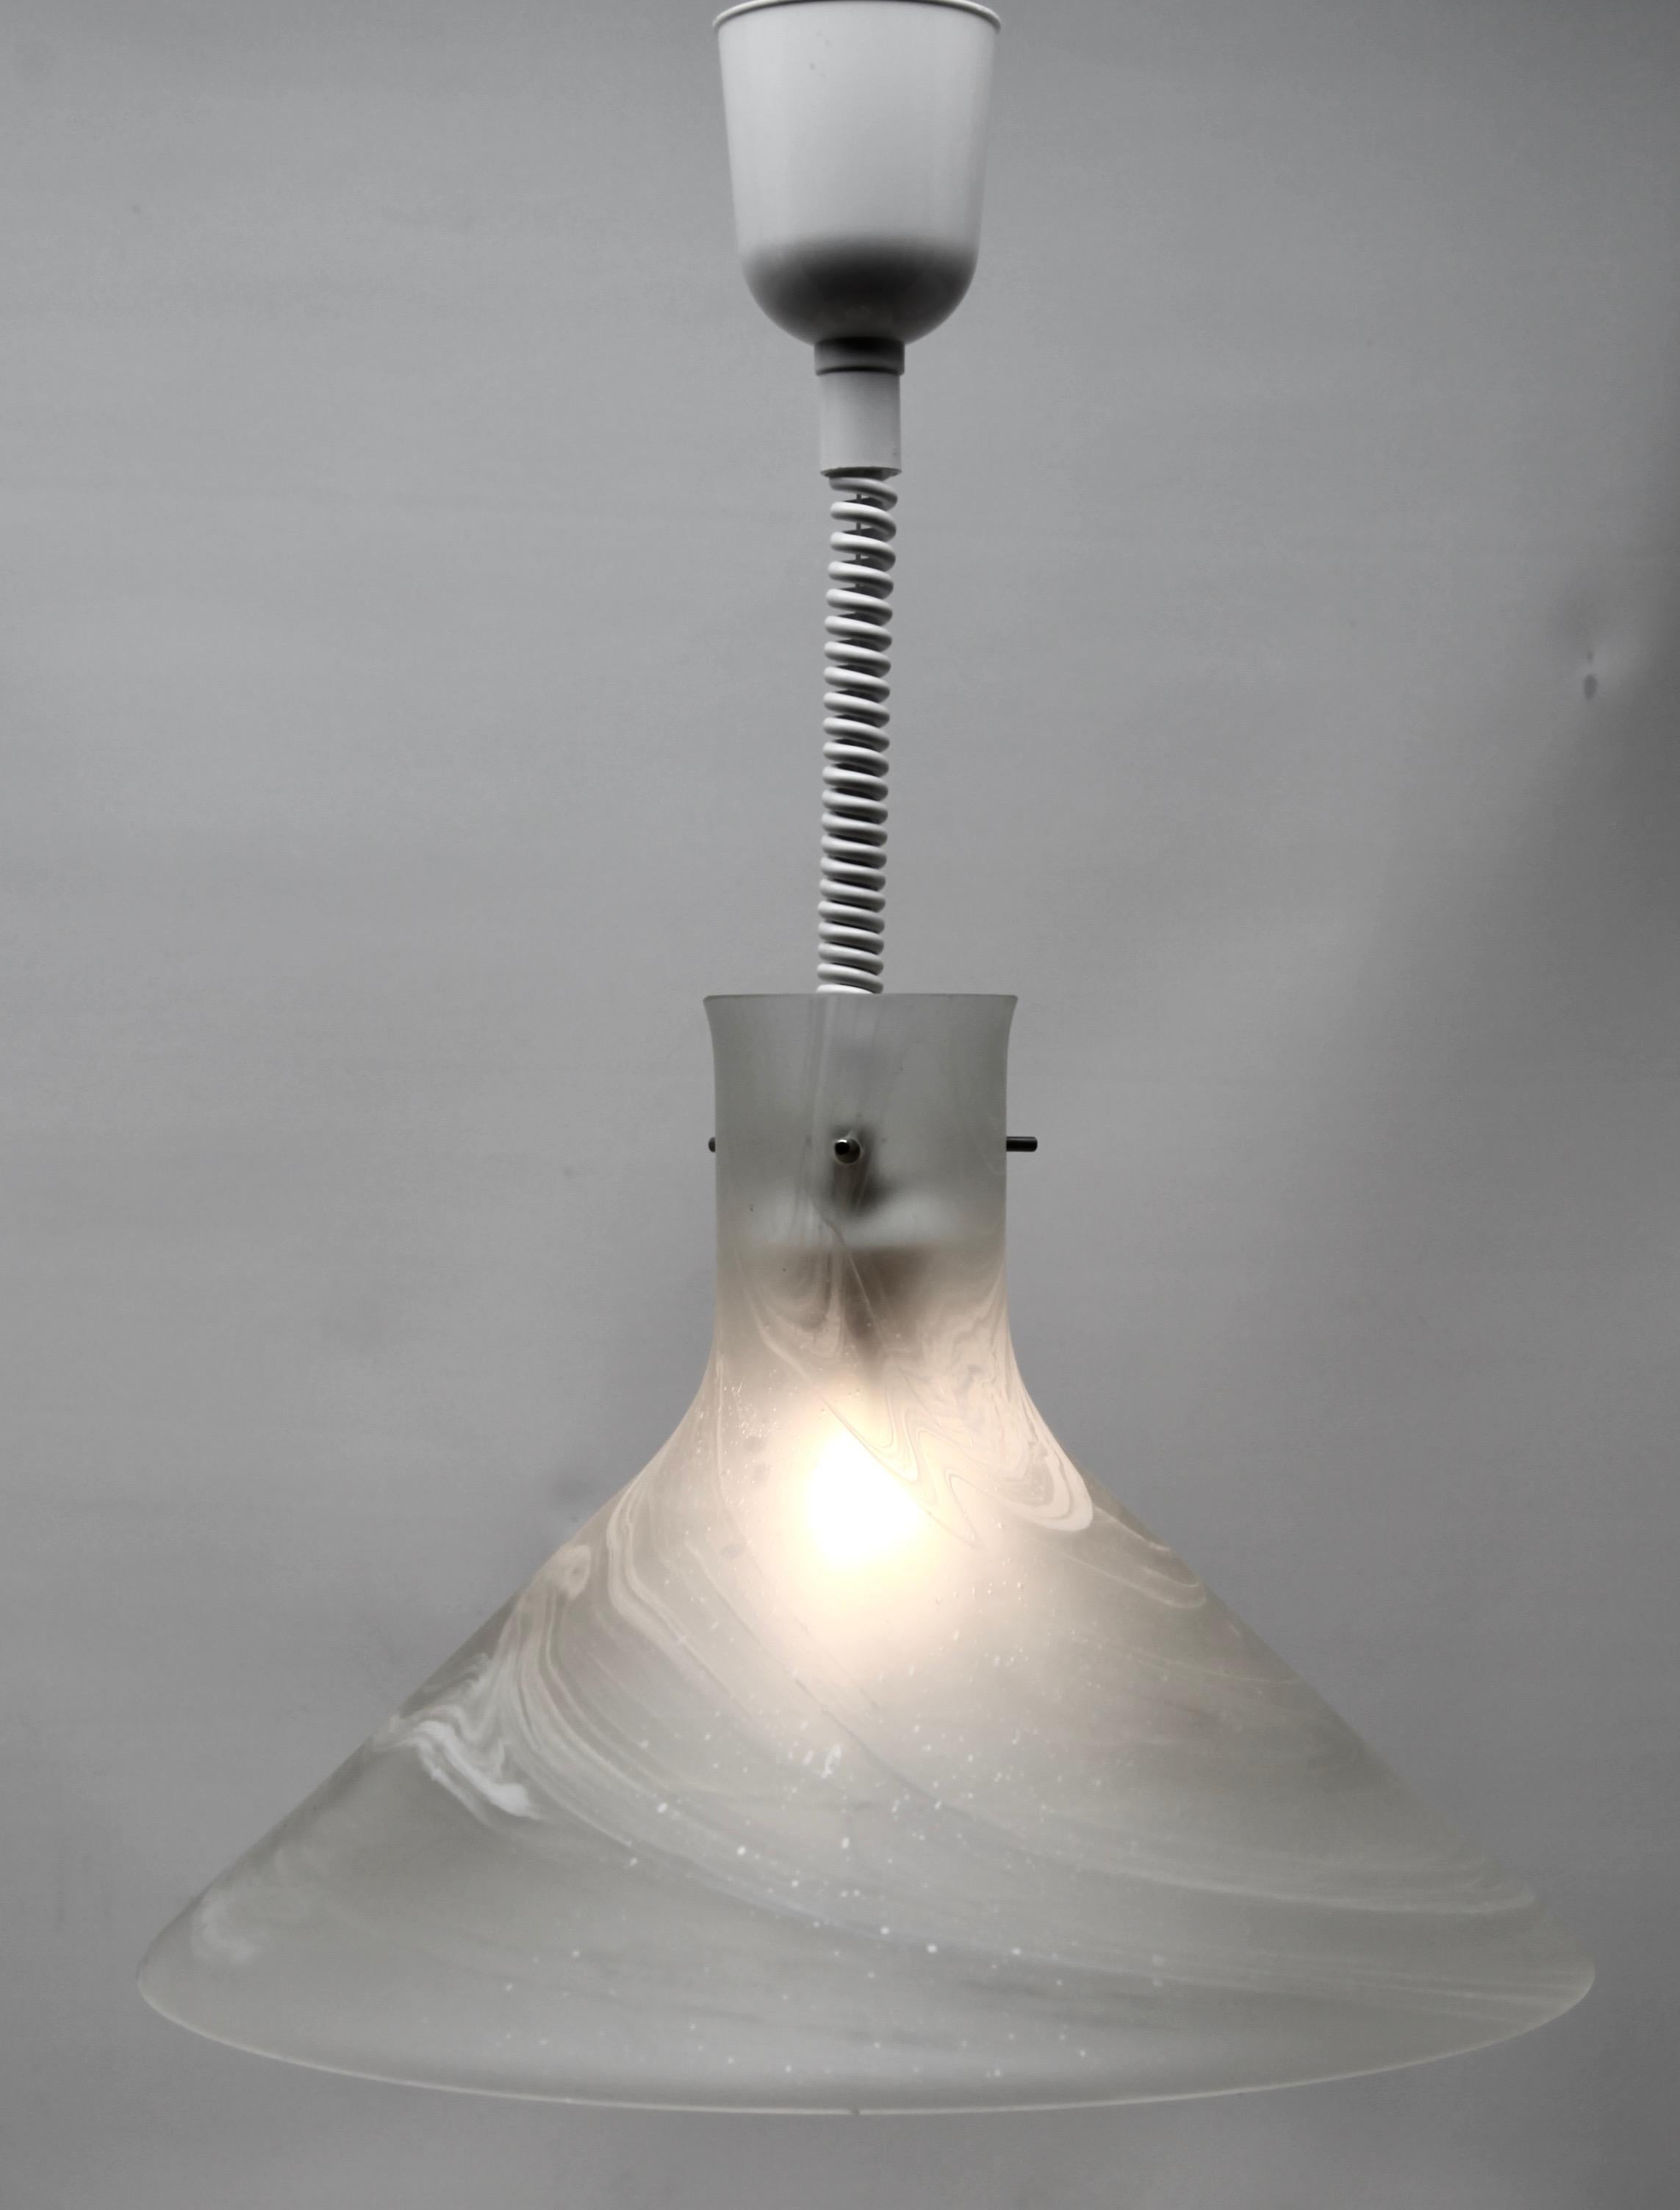 Vieille lampe suspendue de Peill & Putzler, Allemagne. Ce luminaire suspendu central est fabriqué à partir de verre soufflé à la main avec des nuages tourbillonnants de gris et de blanc créant une sensation brutale. Il est doté du système de